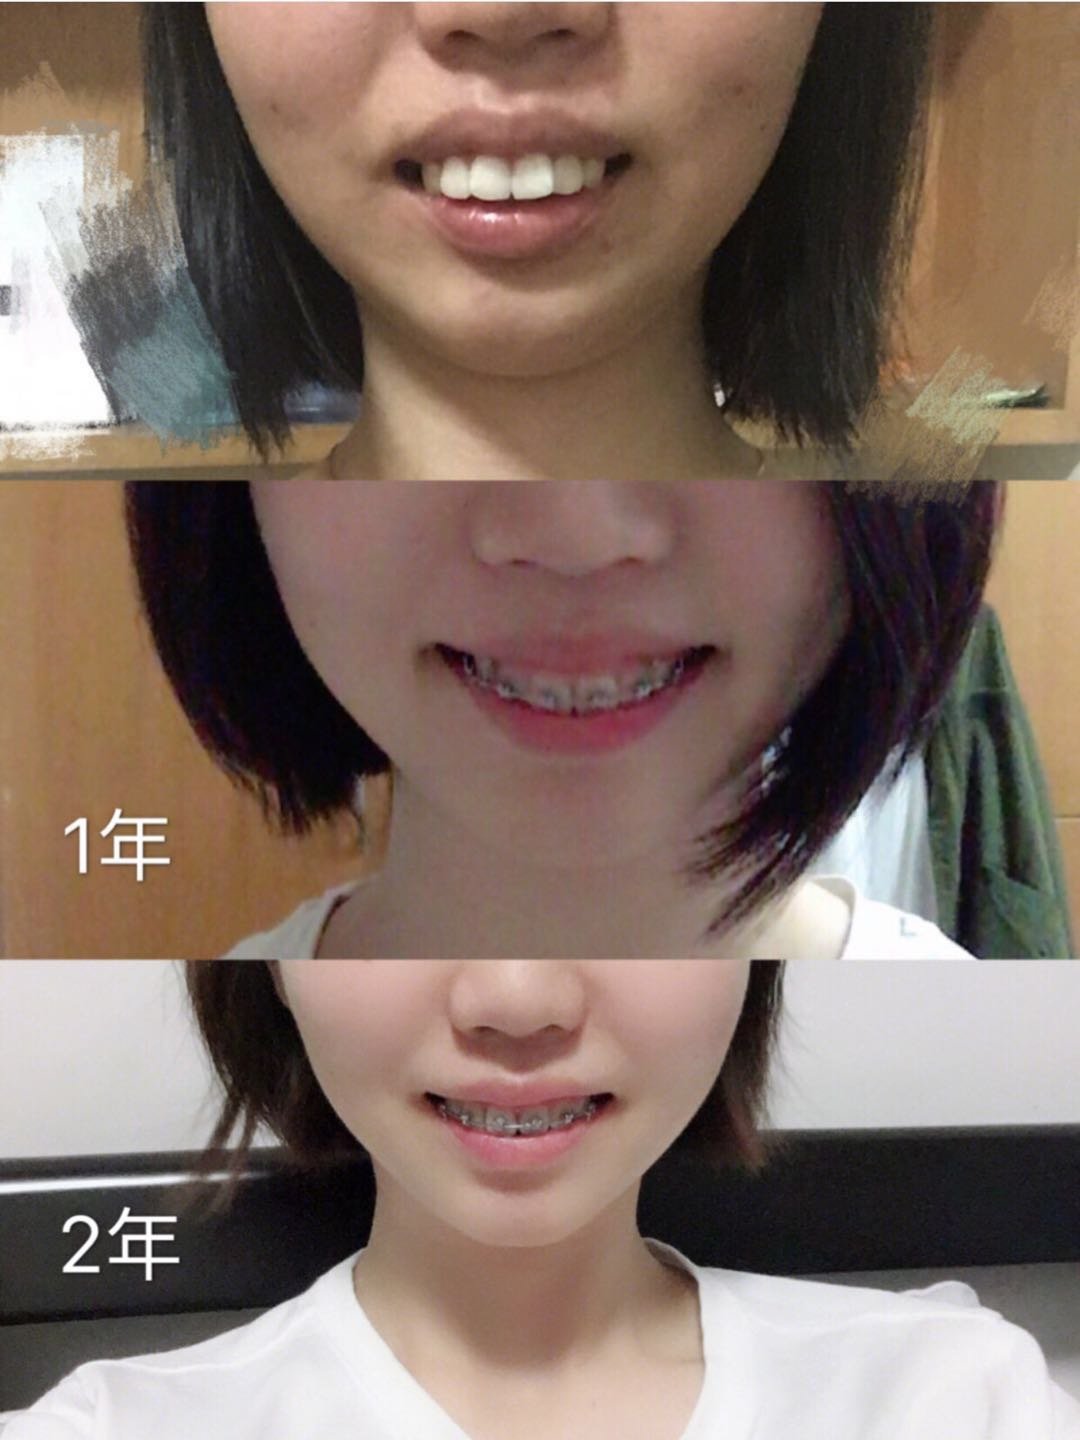 牙齿矫正两年,骨性深覆合,阶段详细对比图